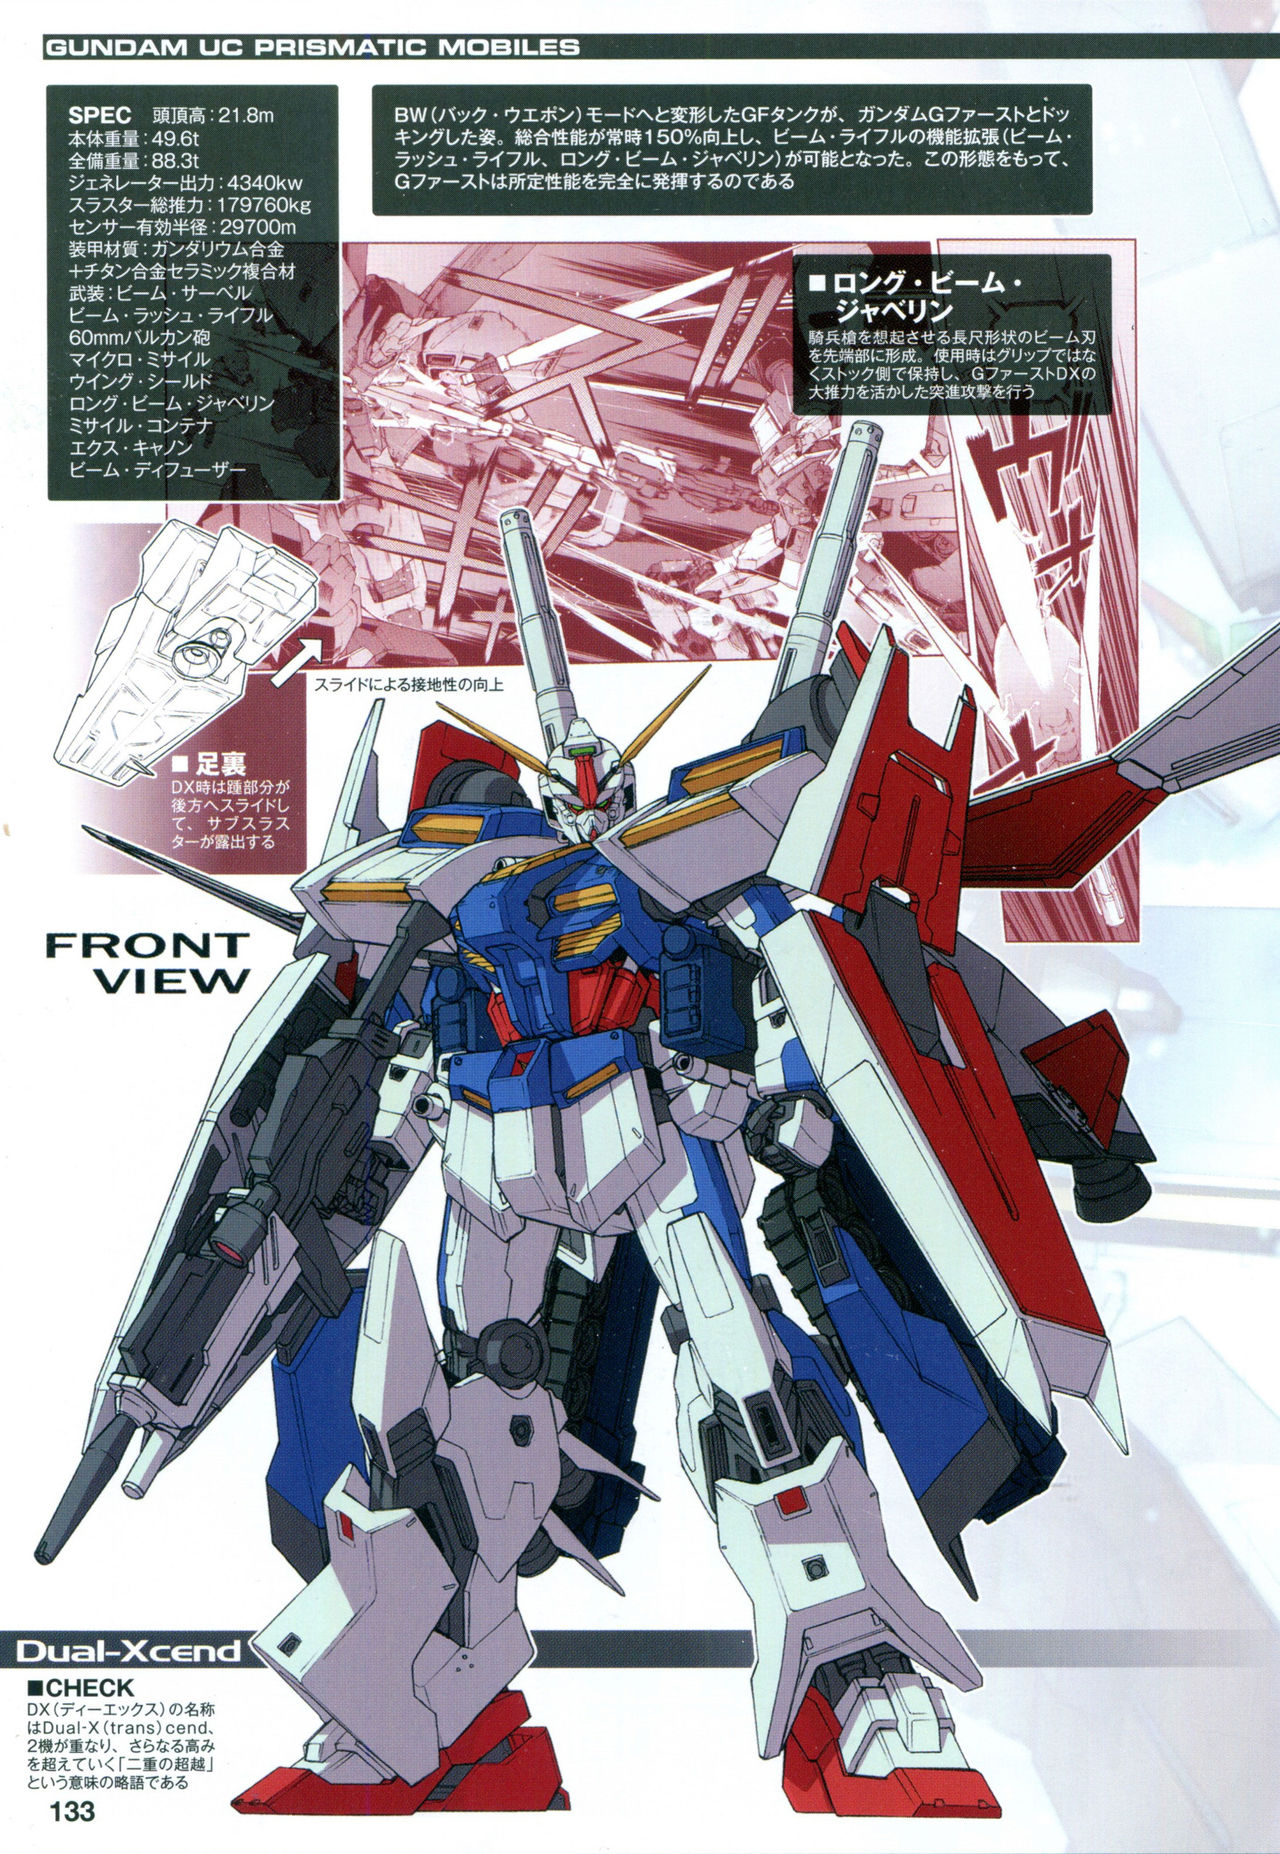 Image - G-first-dx.jpg | The Gundam Wiki | FANDOM powered by Wikia